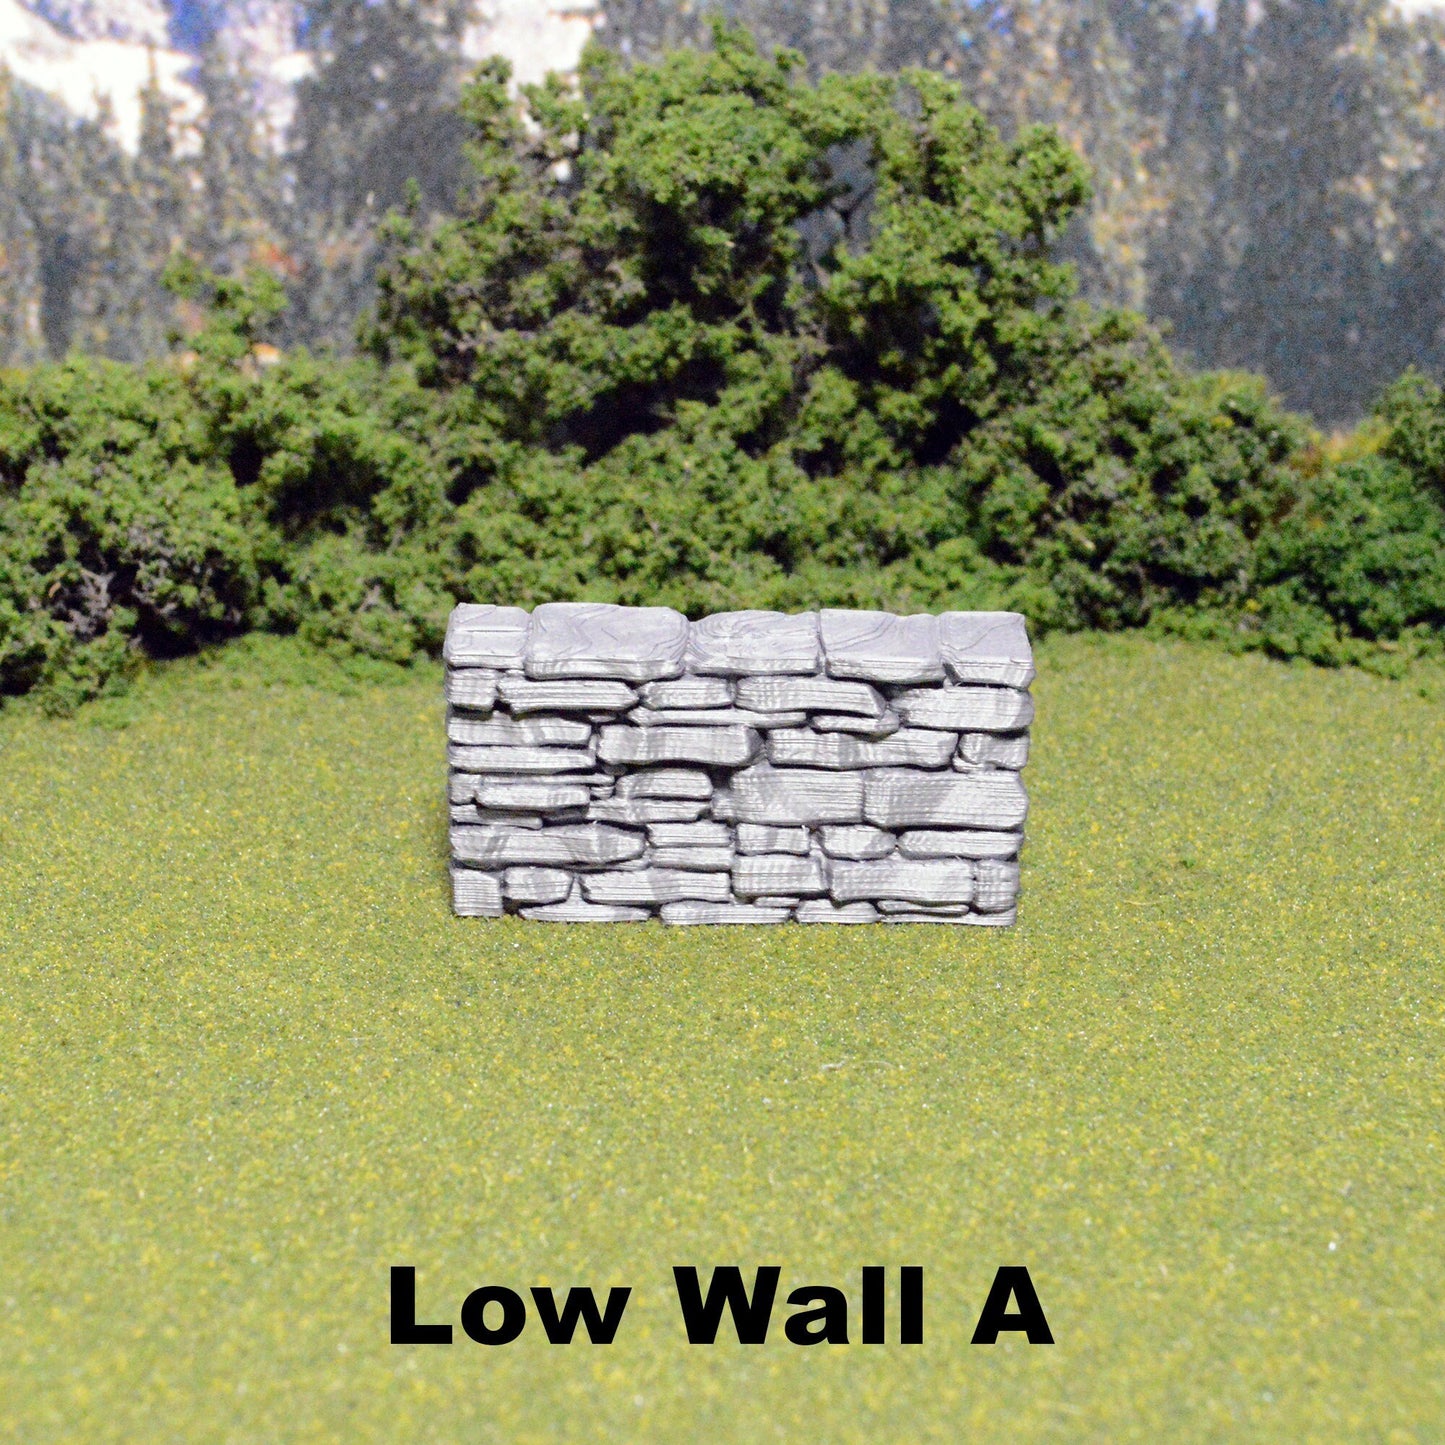 Schist Low Wall Tiles 28mm, Modular OpenLOCK Building Tiles, DnD Stone Wall Tiles, D&D Village Terrain